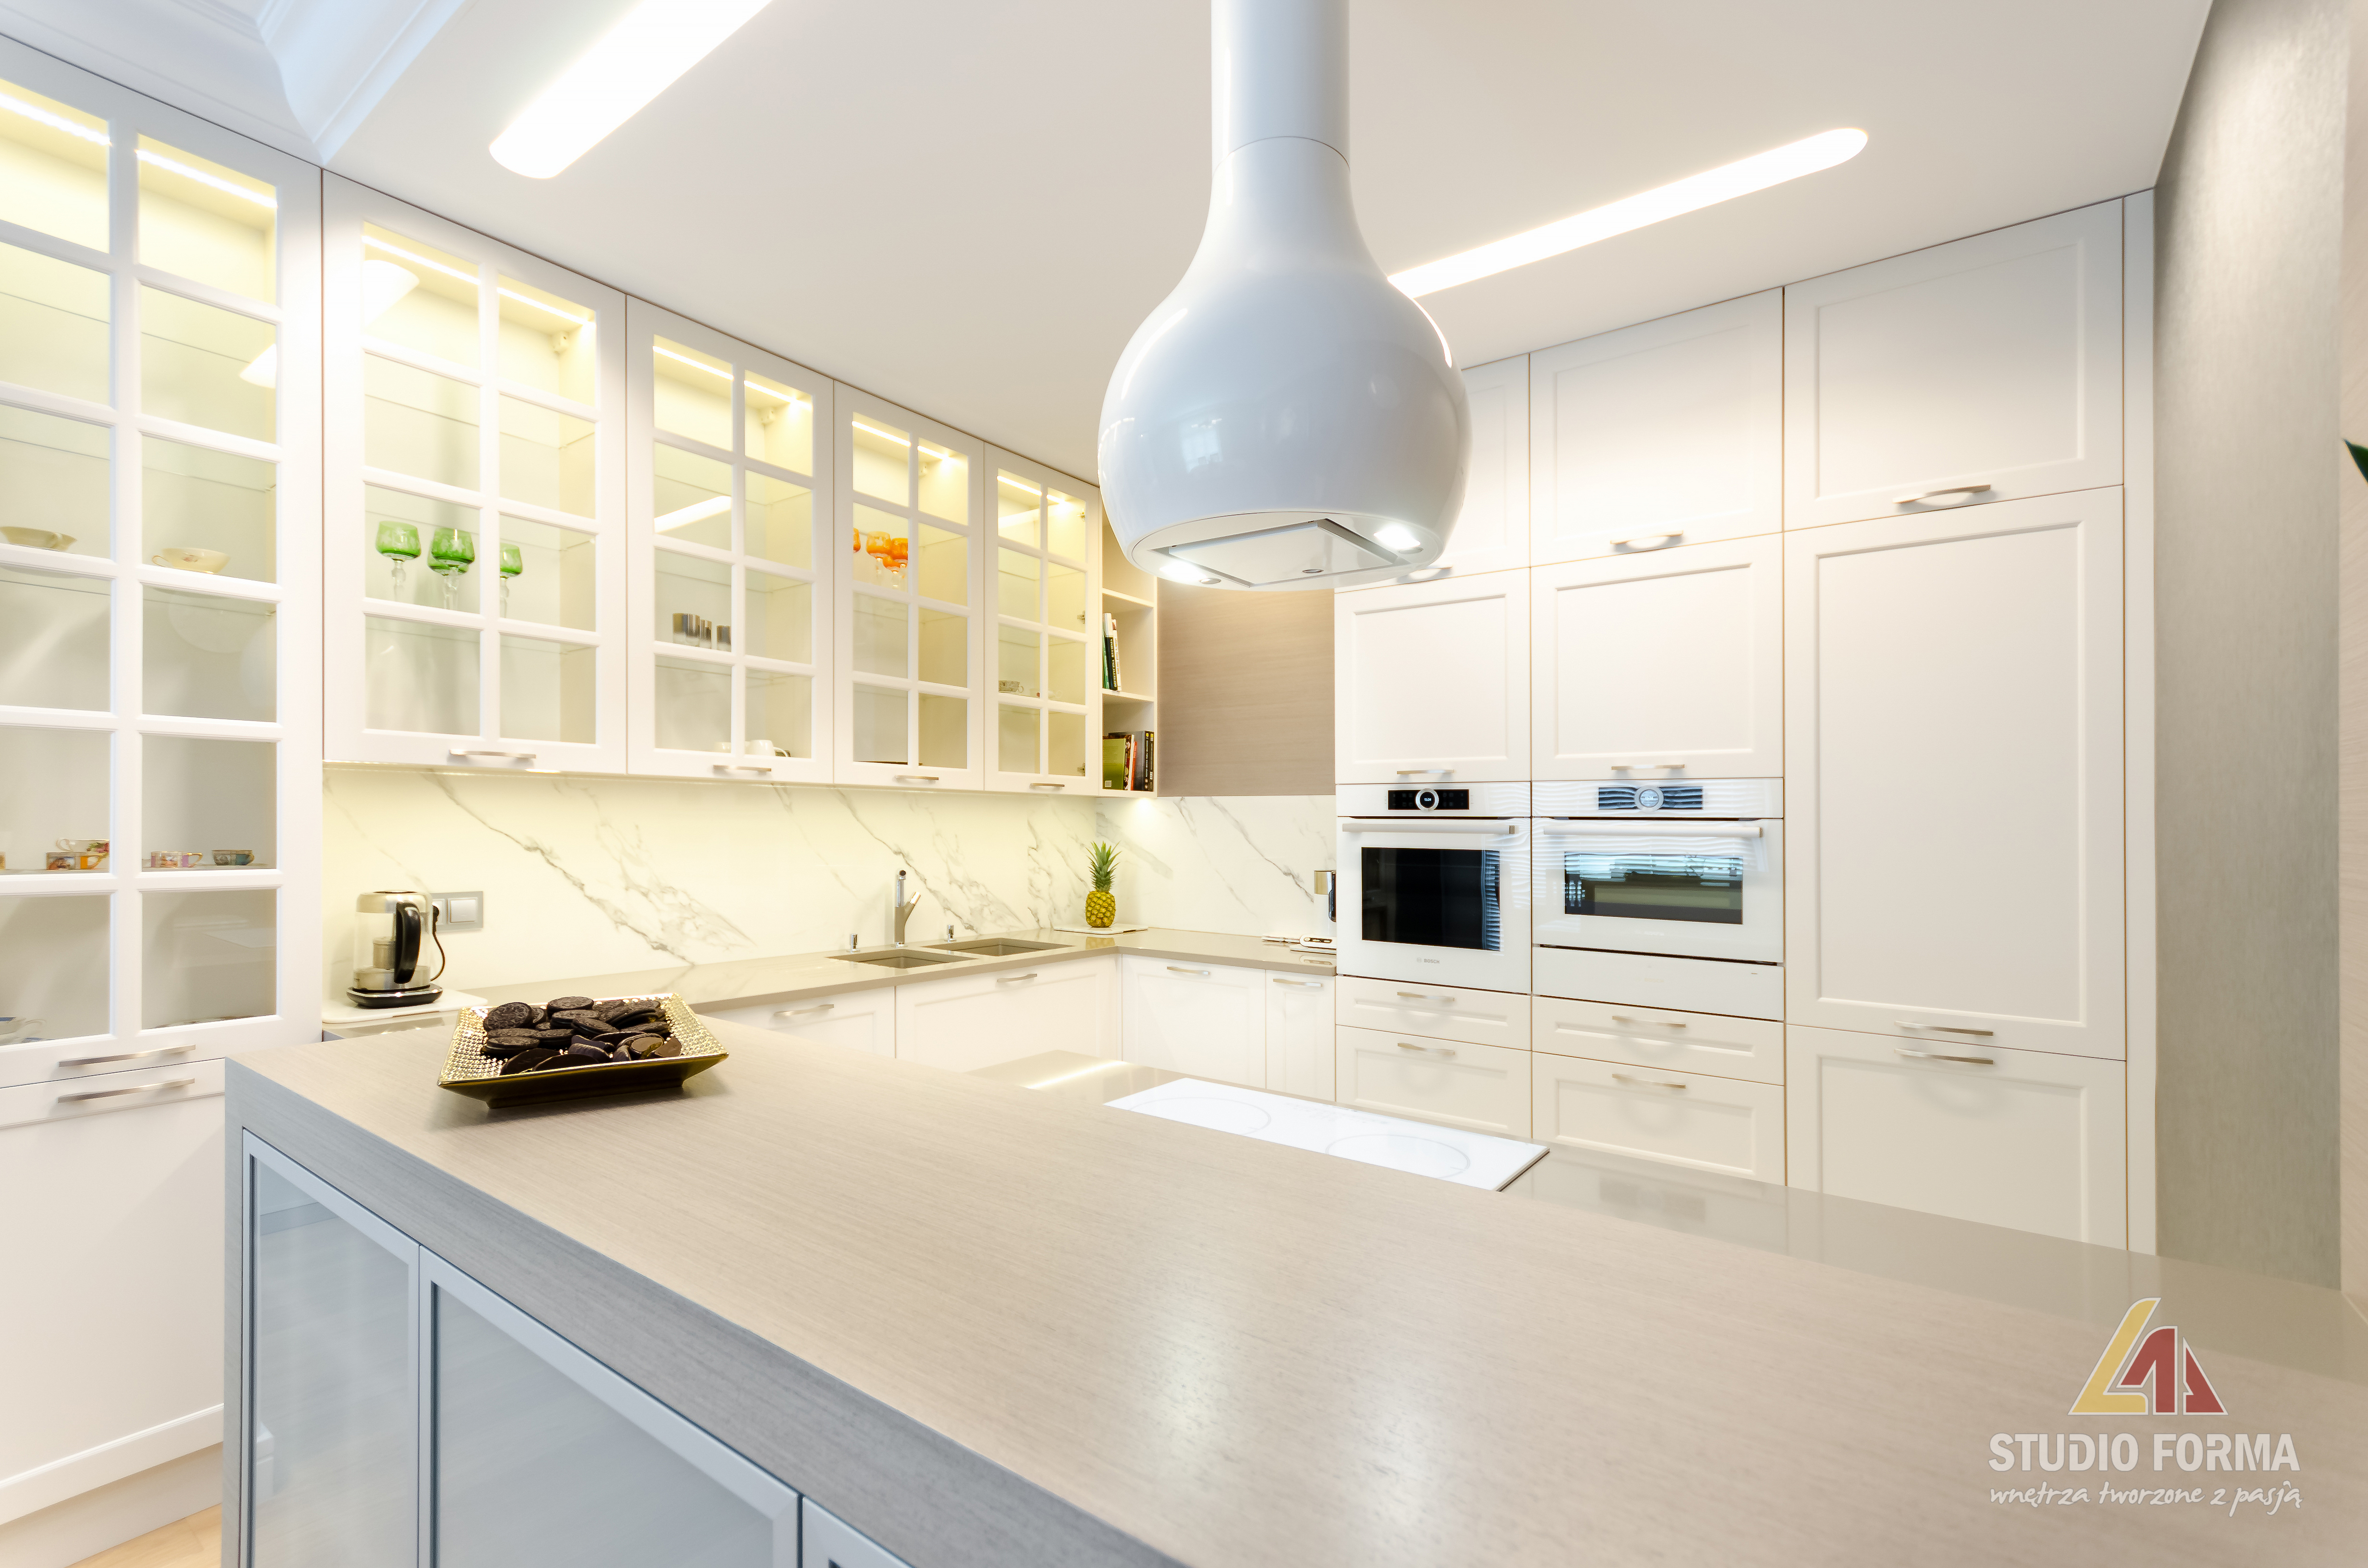 Кроме того, мы хотели показать вам, что белый мрамор на светлой кухне выглядит хорошо, утонченно, но в то же время солидно